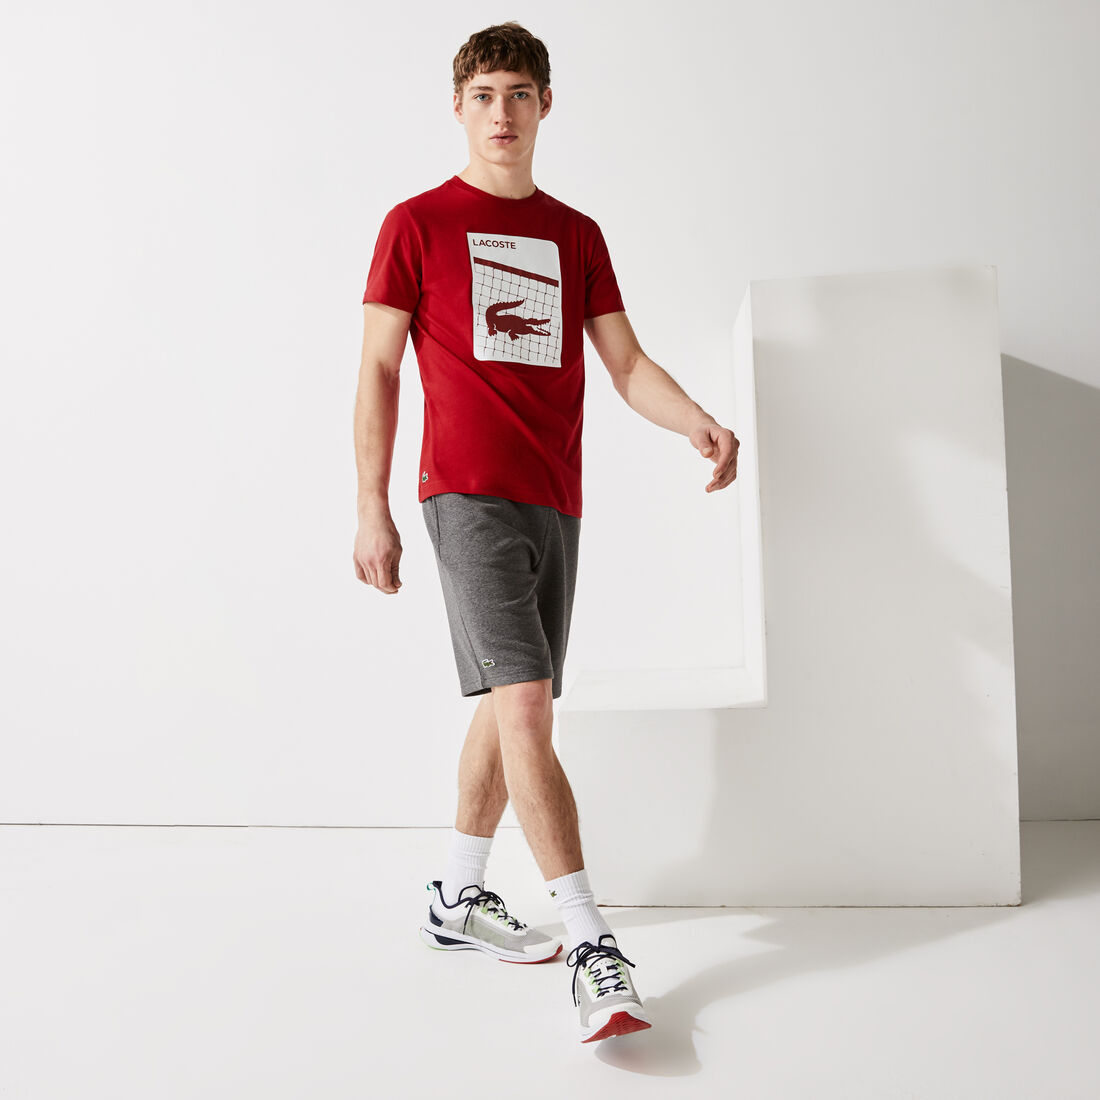 Men's Lacoste SPORT 3D Print Breathable T-shirt